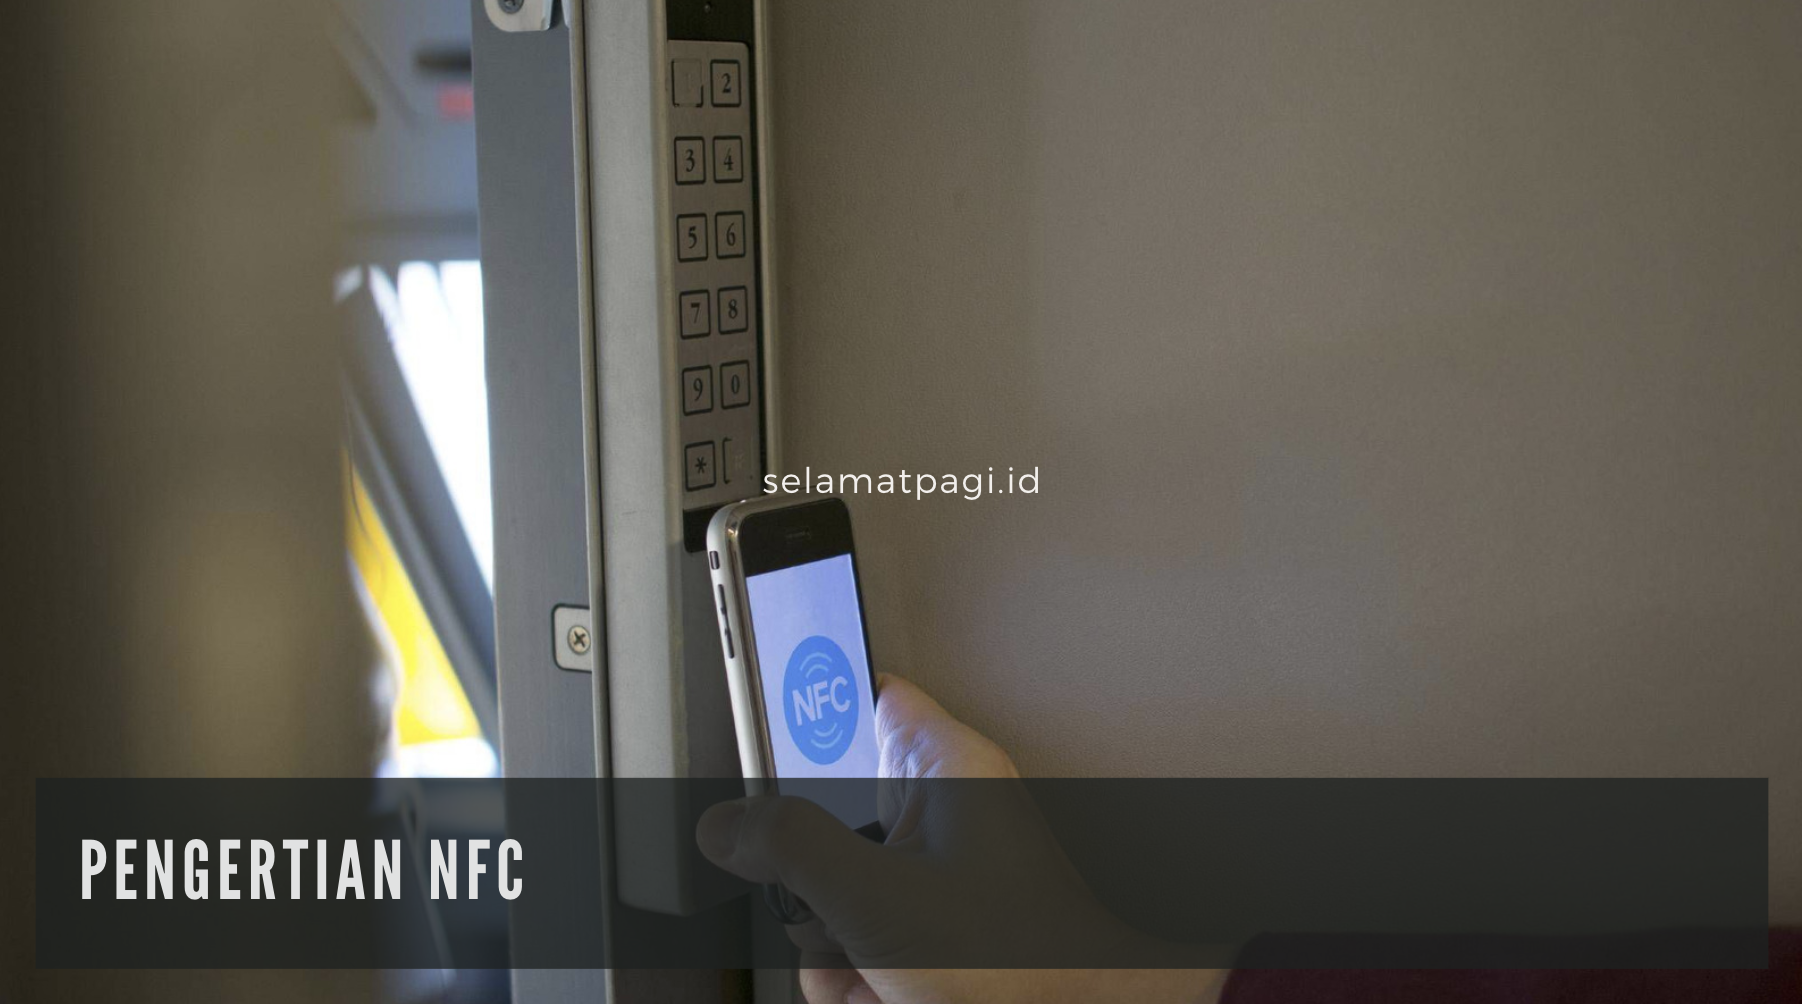 Pengertian NFC